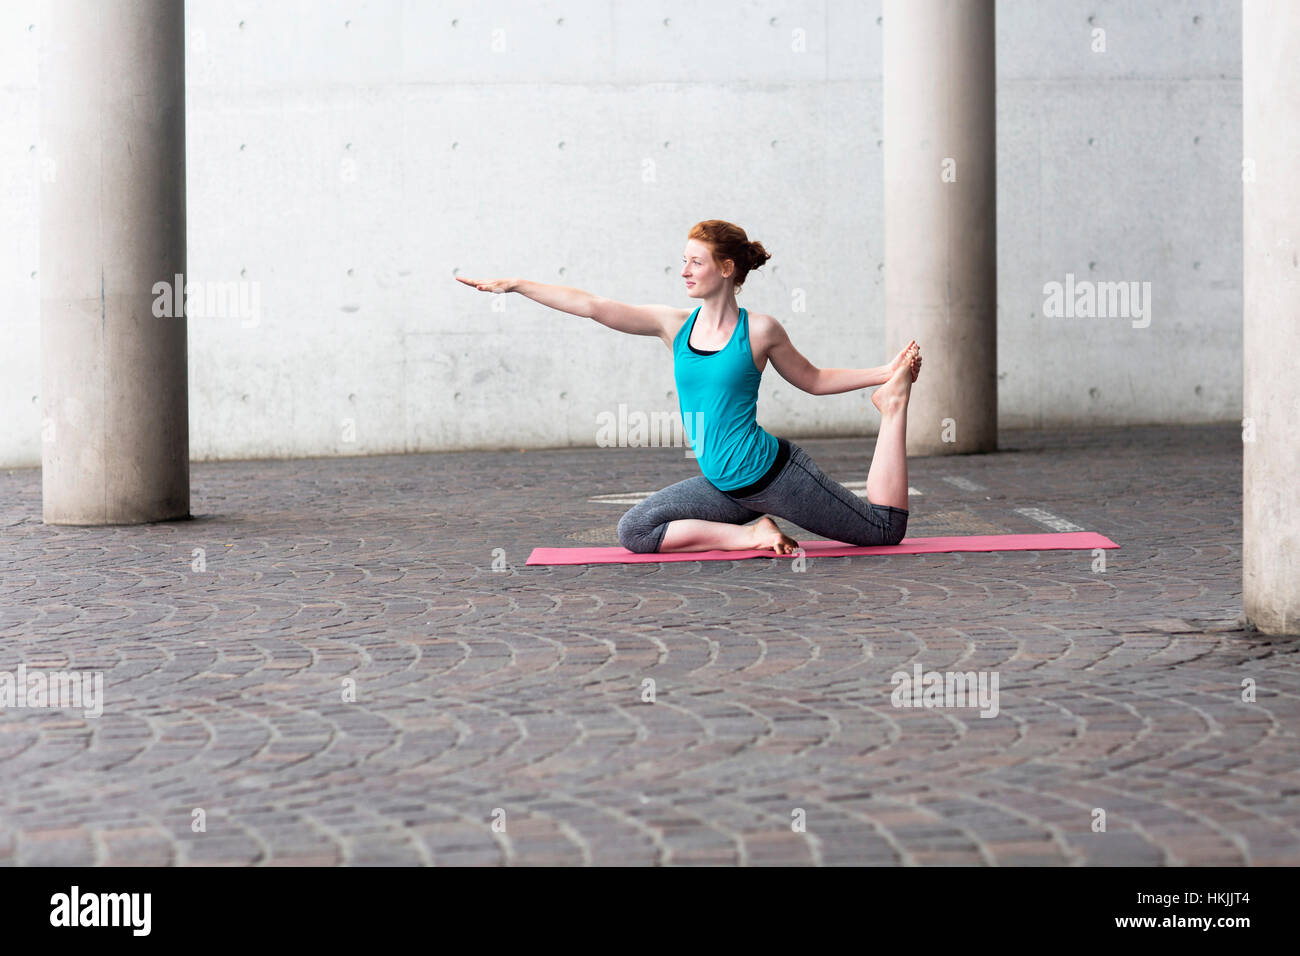 Junge Frau beim Yoga auf Gymnastikmatte in Großstadt, Freiburg Im Breisgau, Baden-Württemberg, Deutschland Stockfoto